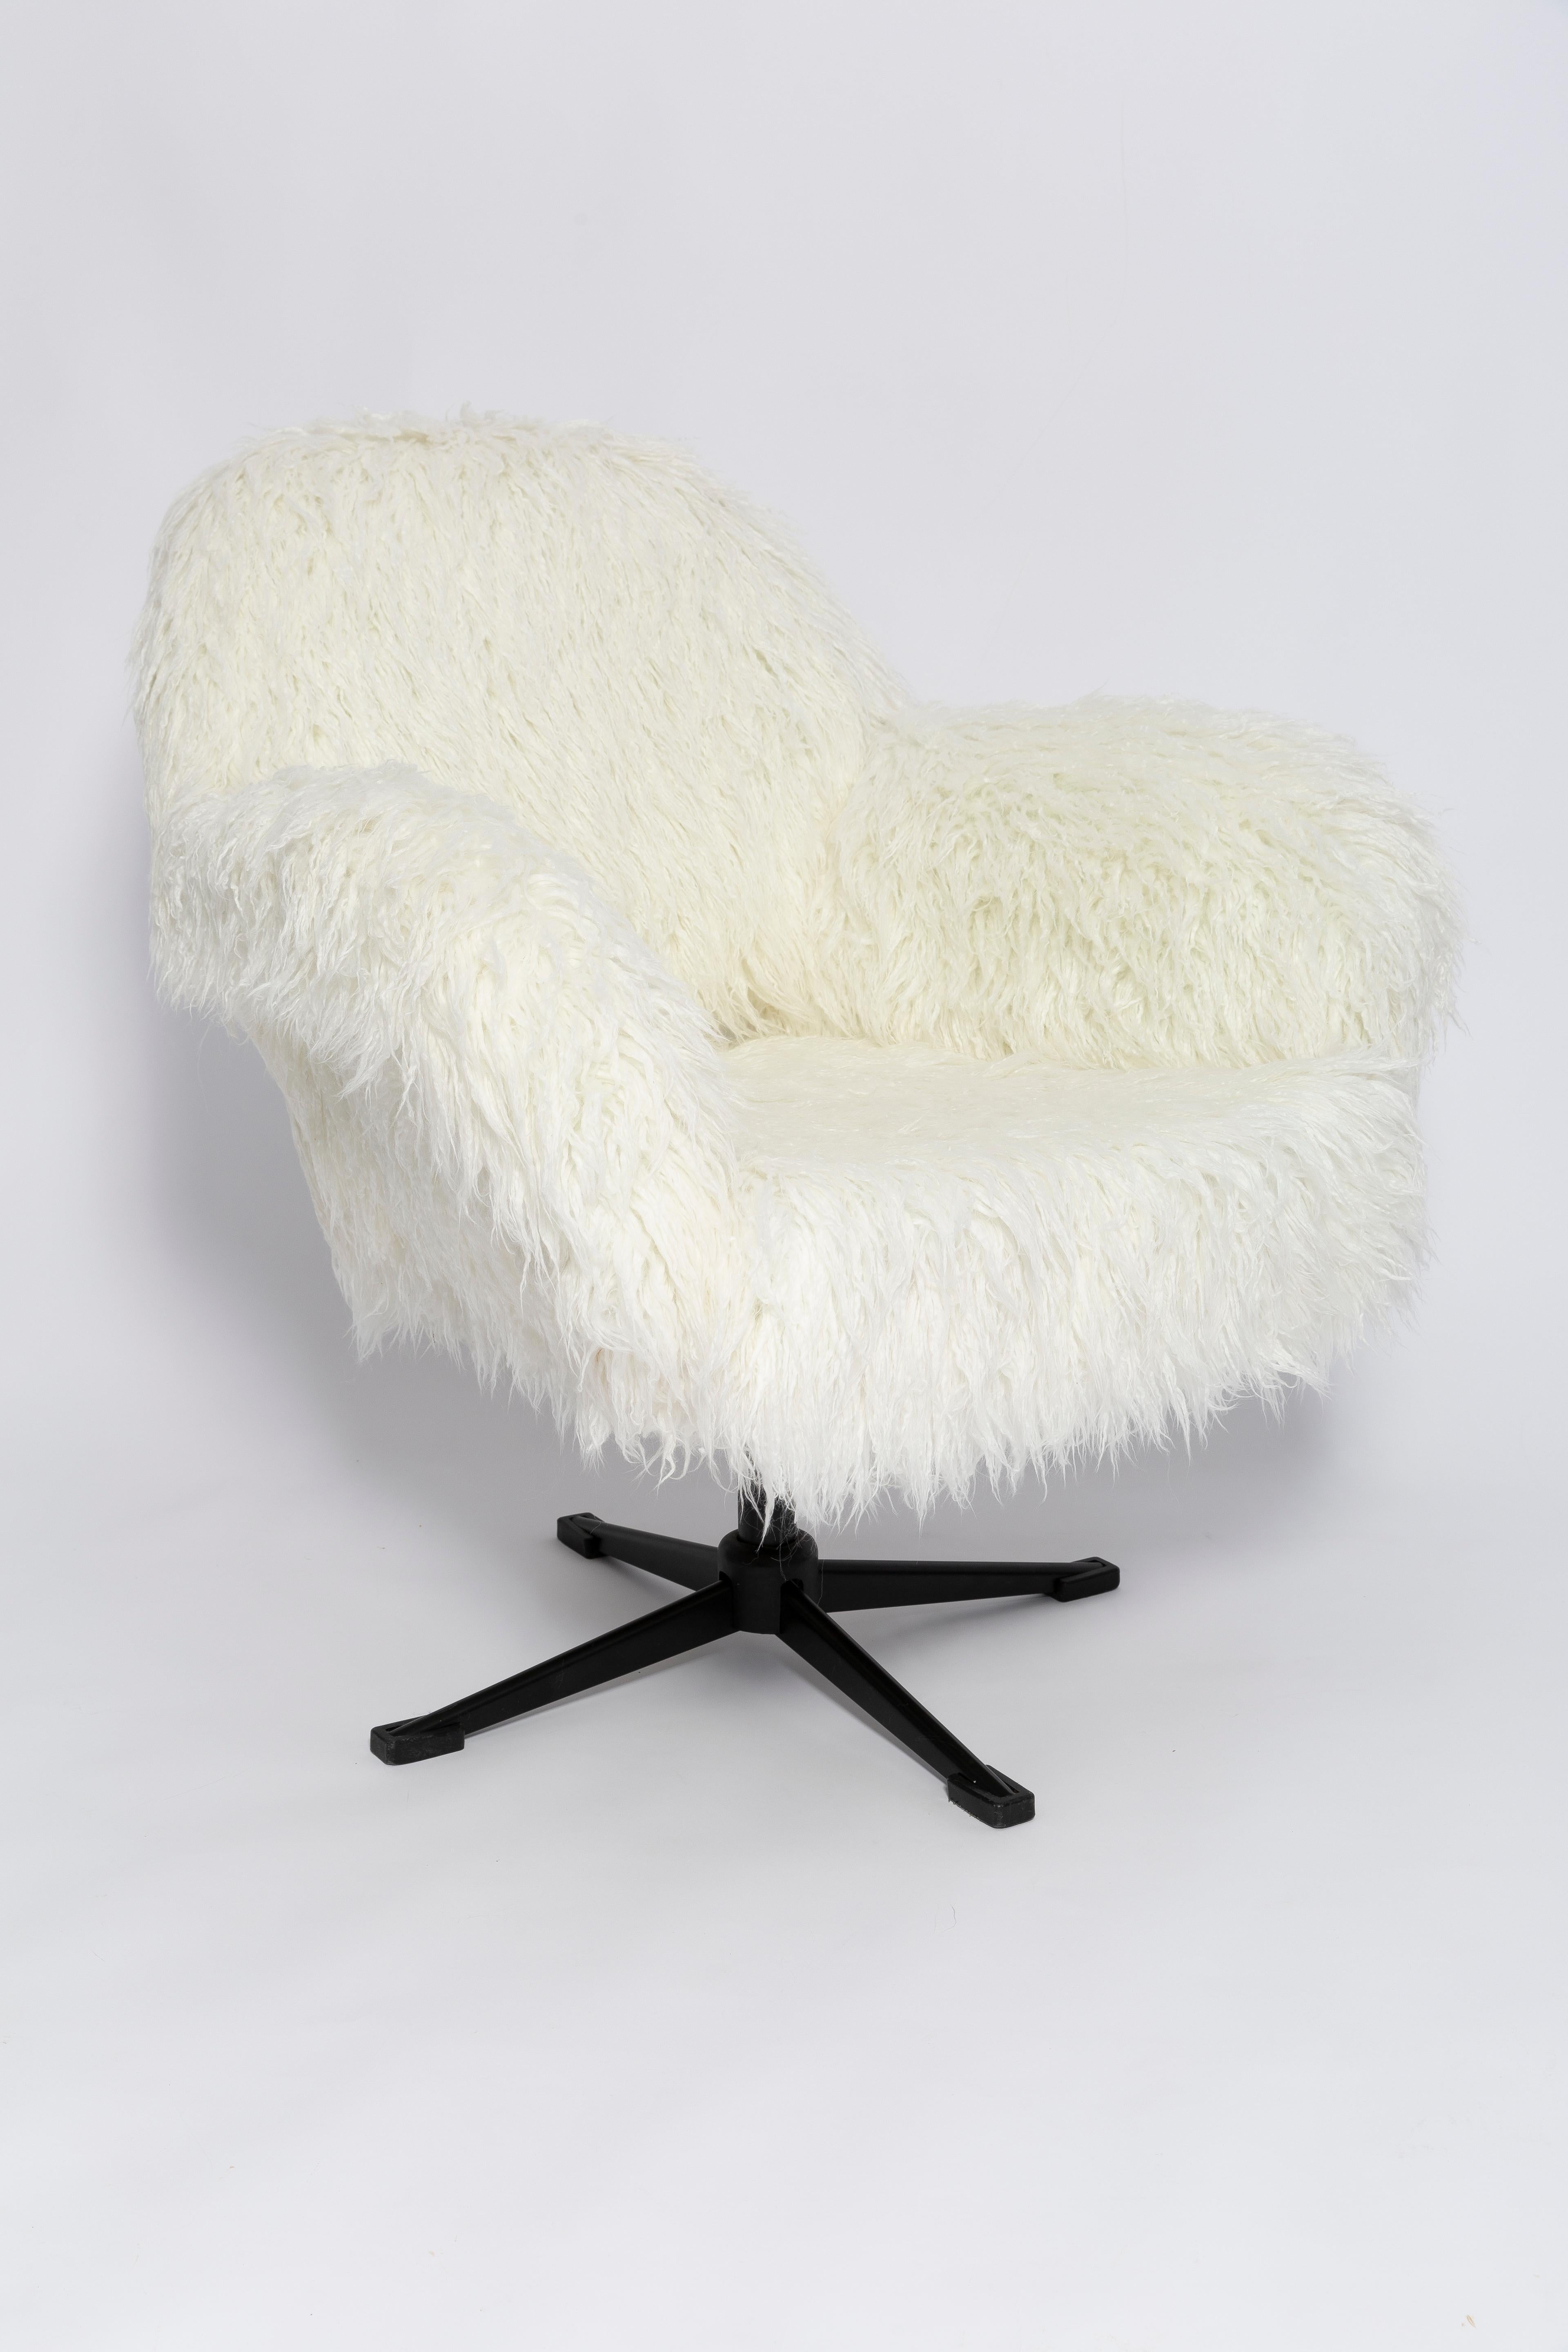 Étonnant fauteuil pivotant des années 1960, produit dans l'usine de meubles silésienne de Swiebodzin - ils sont actuellement uniques. Très confortable. Grâce à leurs dimensions, ils s'intègrent parfaitement, même dans les petits appartements,